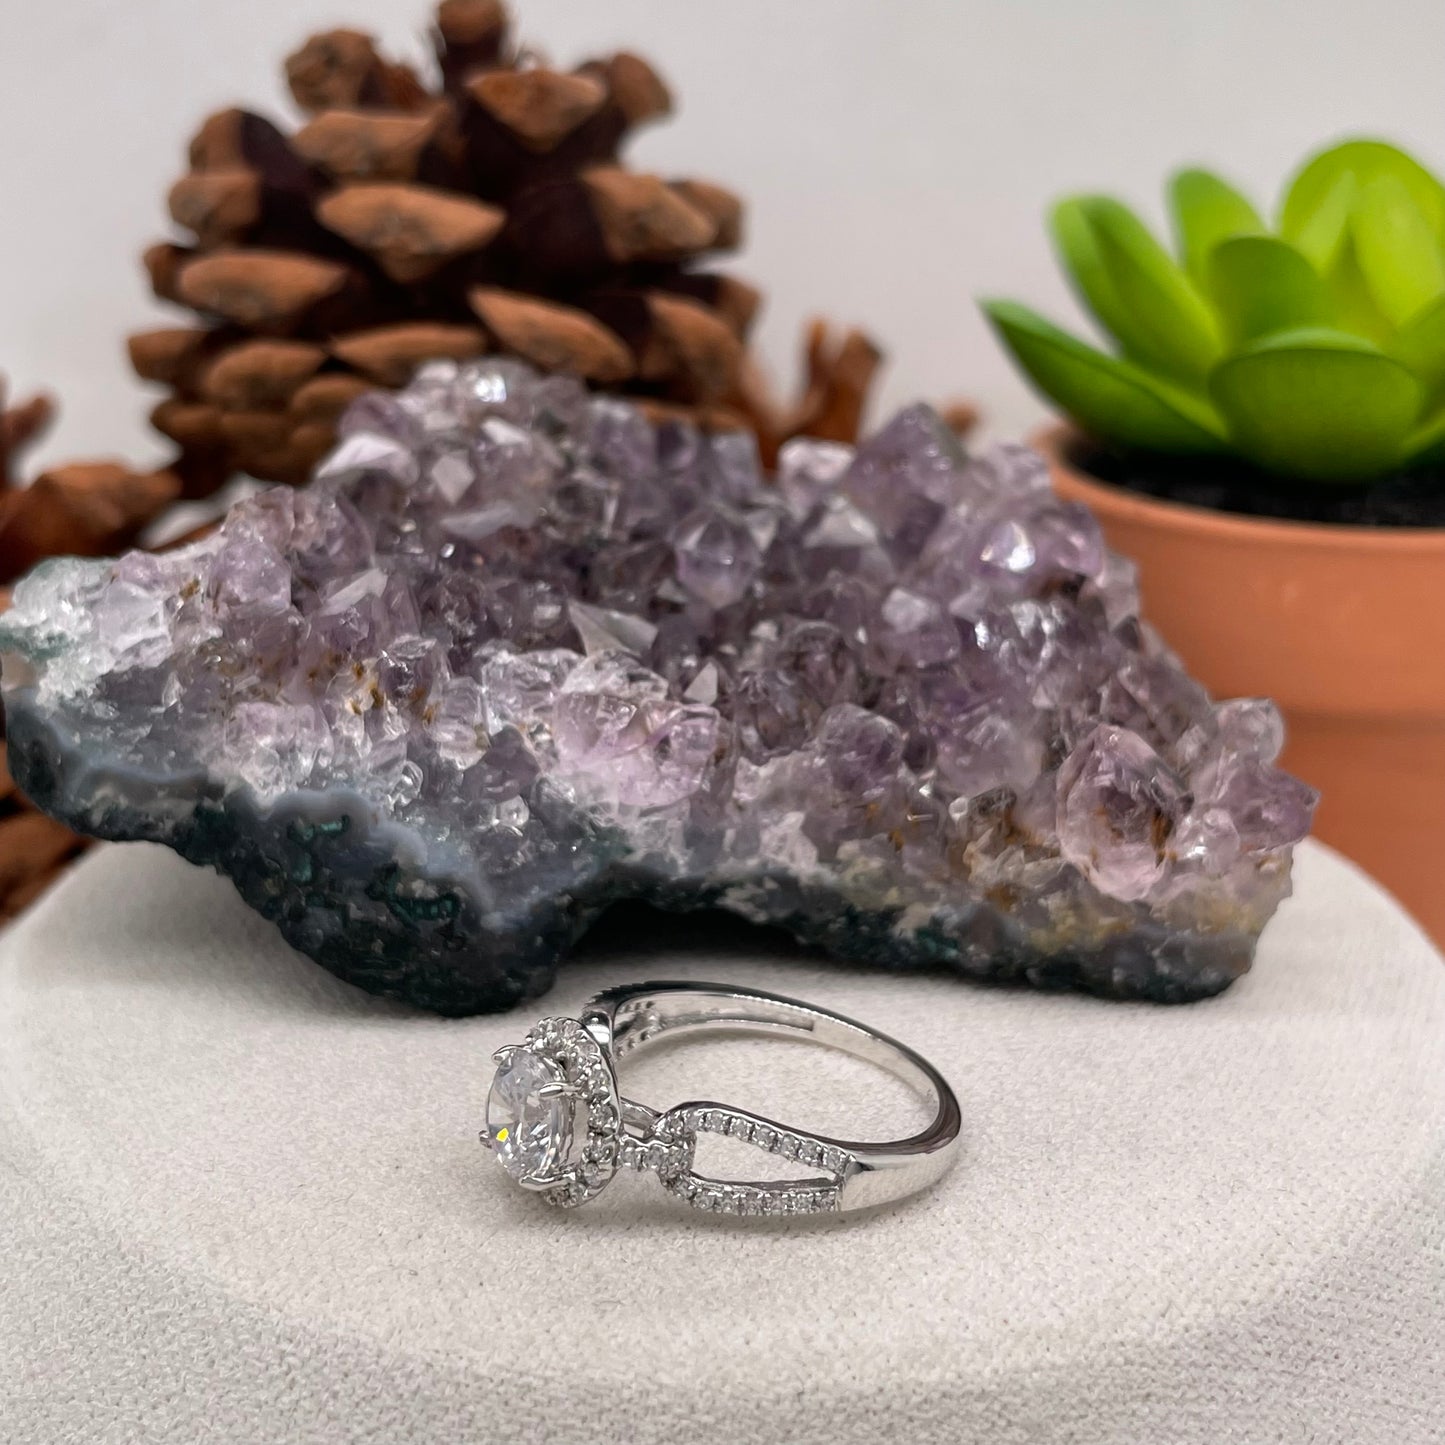 1.13 Carat Round Brilliant Lab Created / Naturel Diamond Engagement Ring